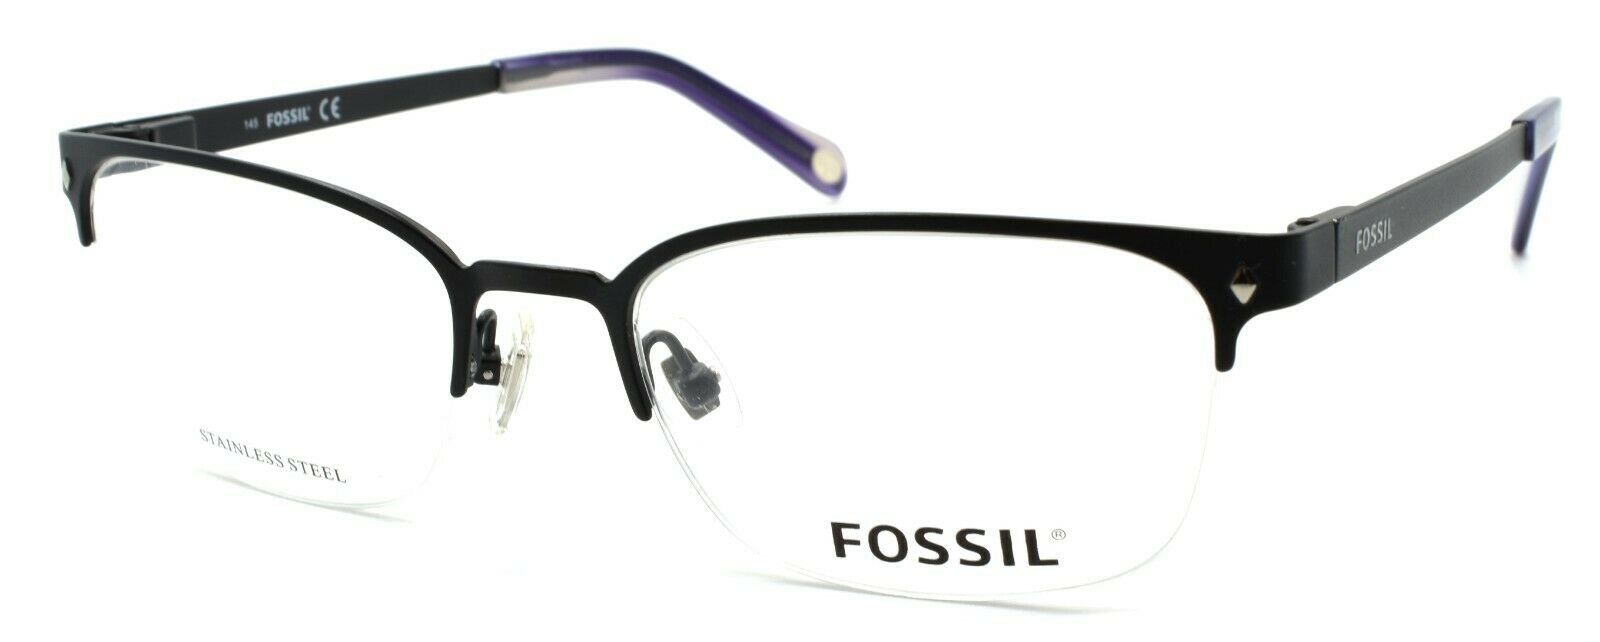 1-Fossil Will 0RX1 Men's Eyeglasses Frames Half-rim 52-19-145 Matte Black-716737556764-IKSpecs